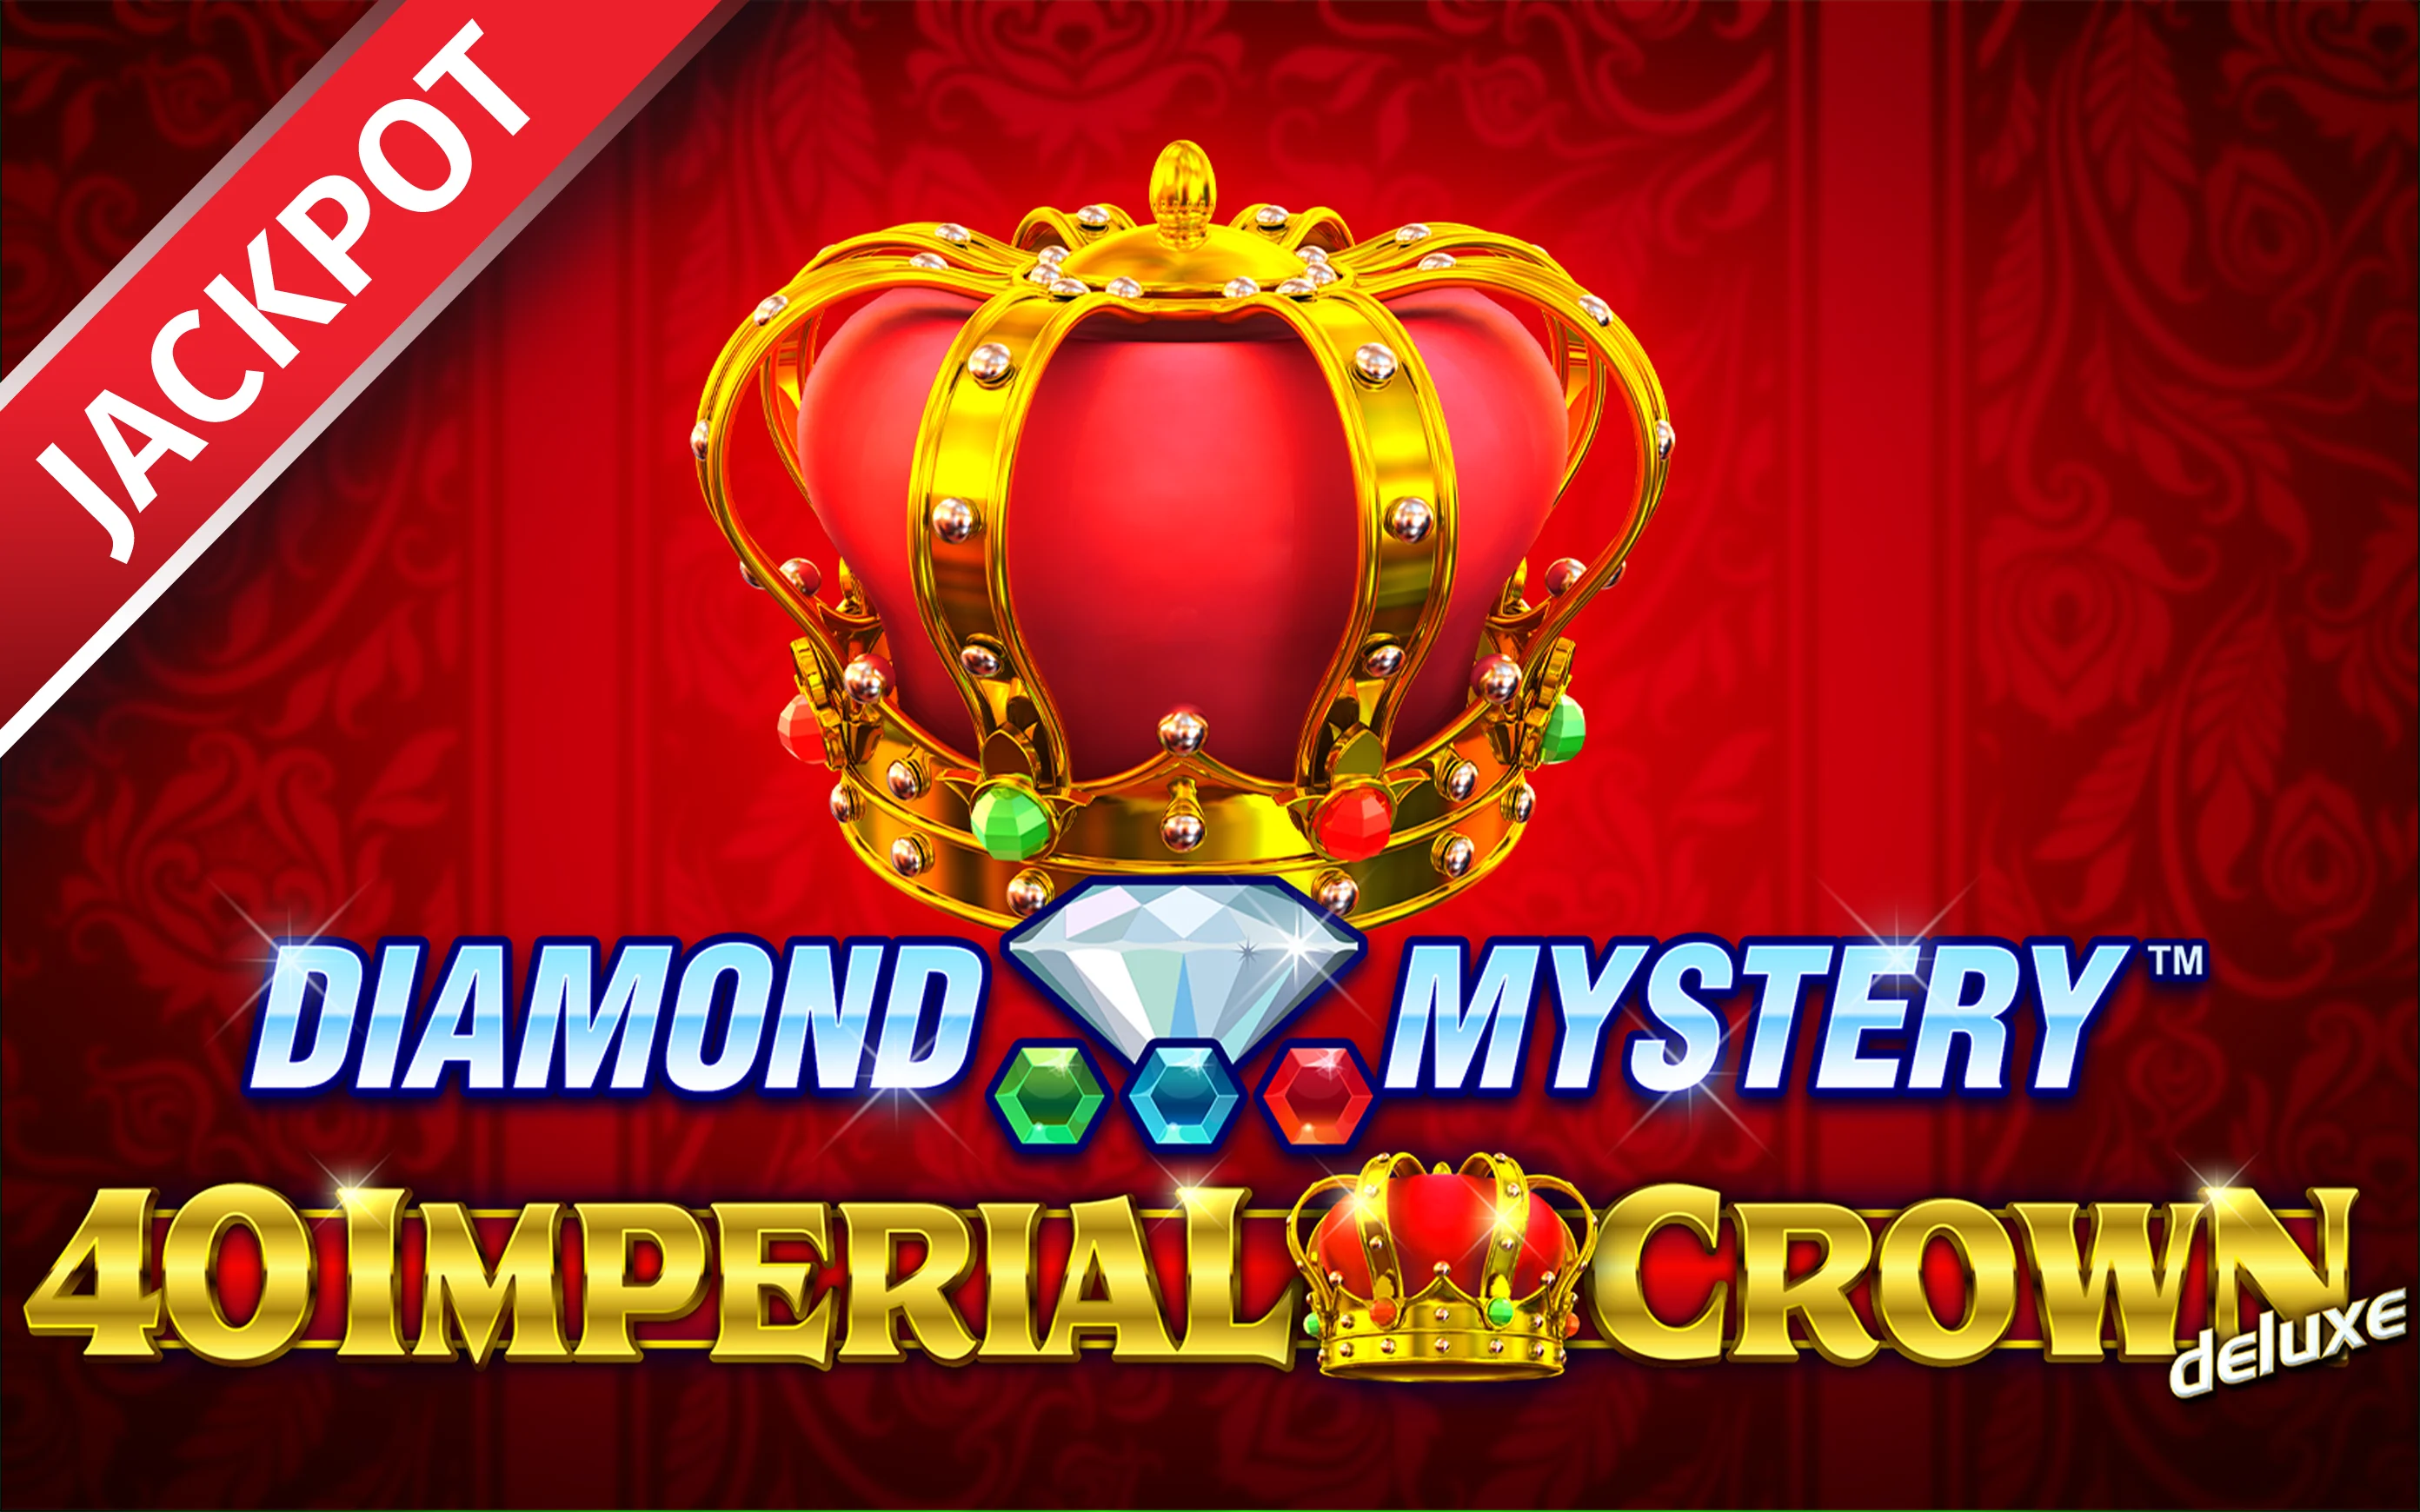 Zagraj w Diamond Mystery™ – 40 Imperial Crown deluxe w kasynie online Starcasino.be